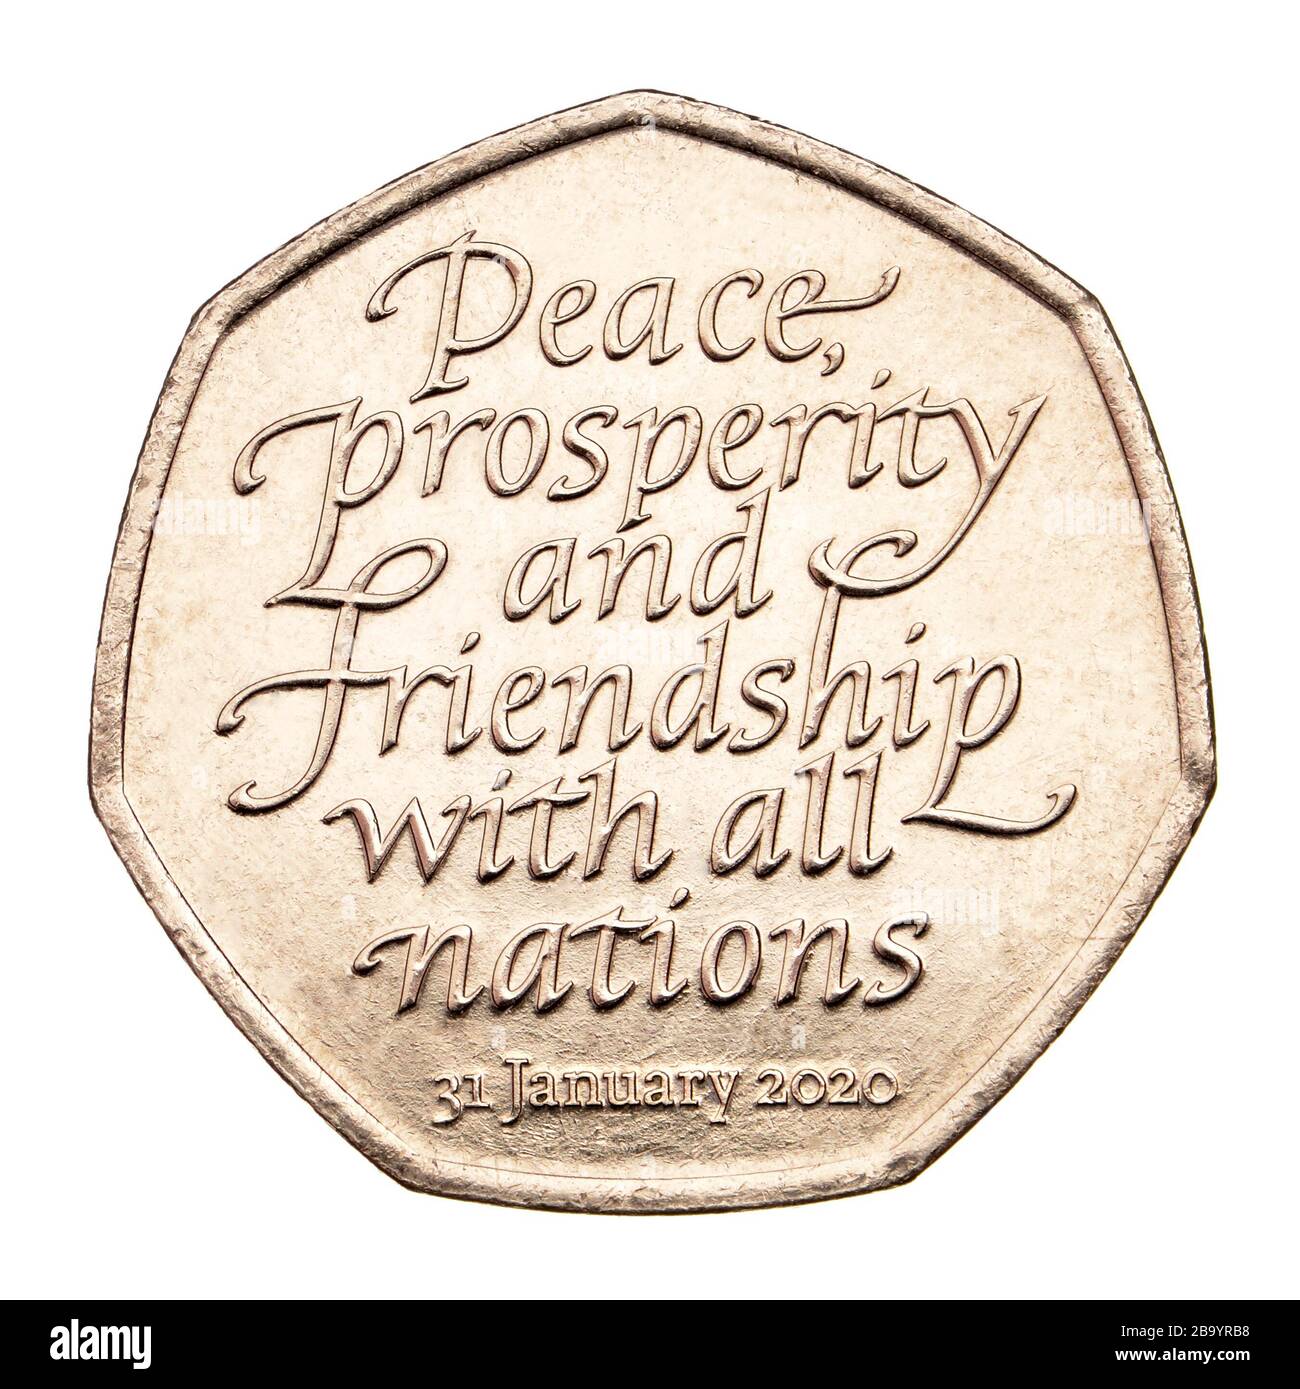 Moneta commemorativa britannica da 50p. Brexit - la Gran Bretagna lascia l’Unione europea il 31 gennaio 2020 Foto Stock